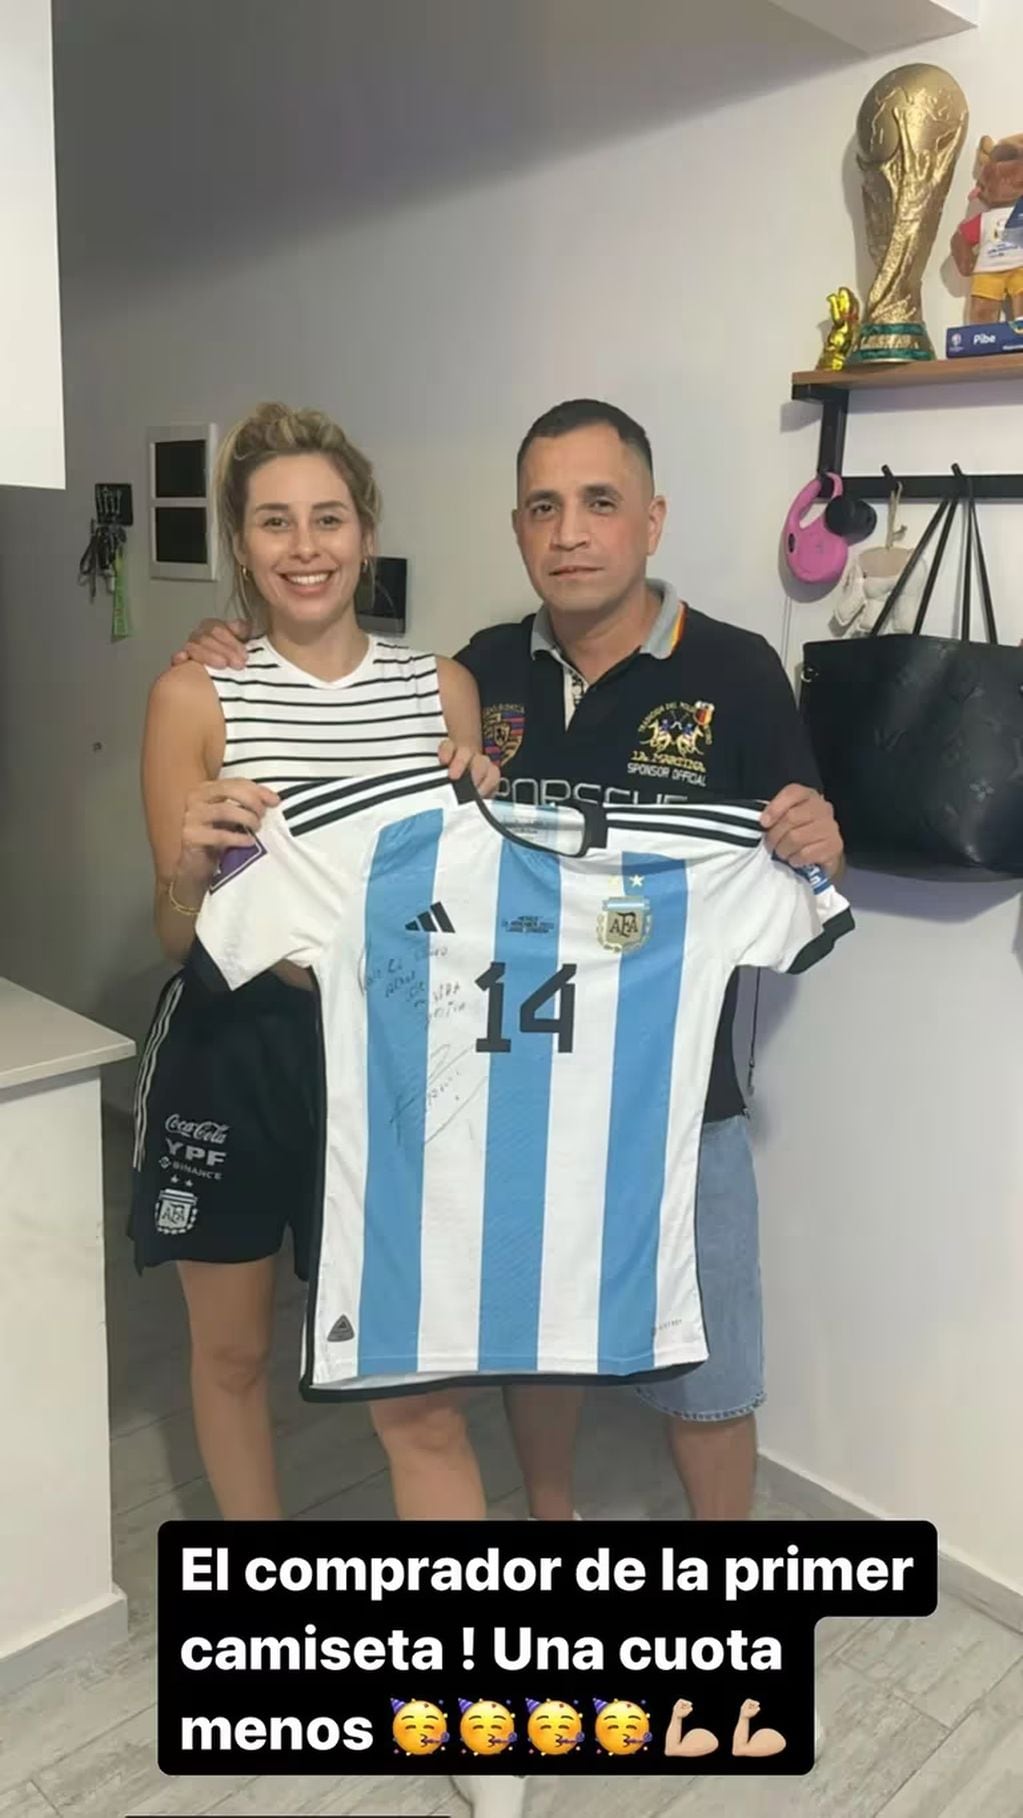 La ex esposa de Exequiel Palacios vendió la camiseta del futbolista